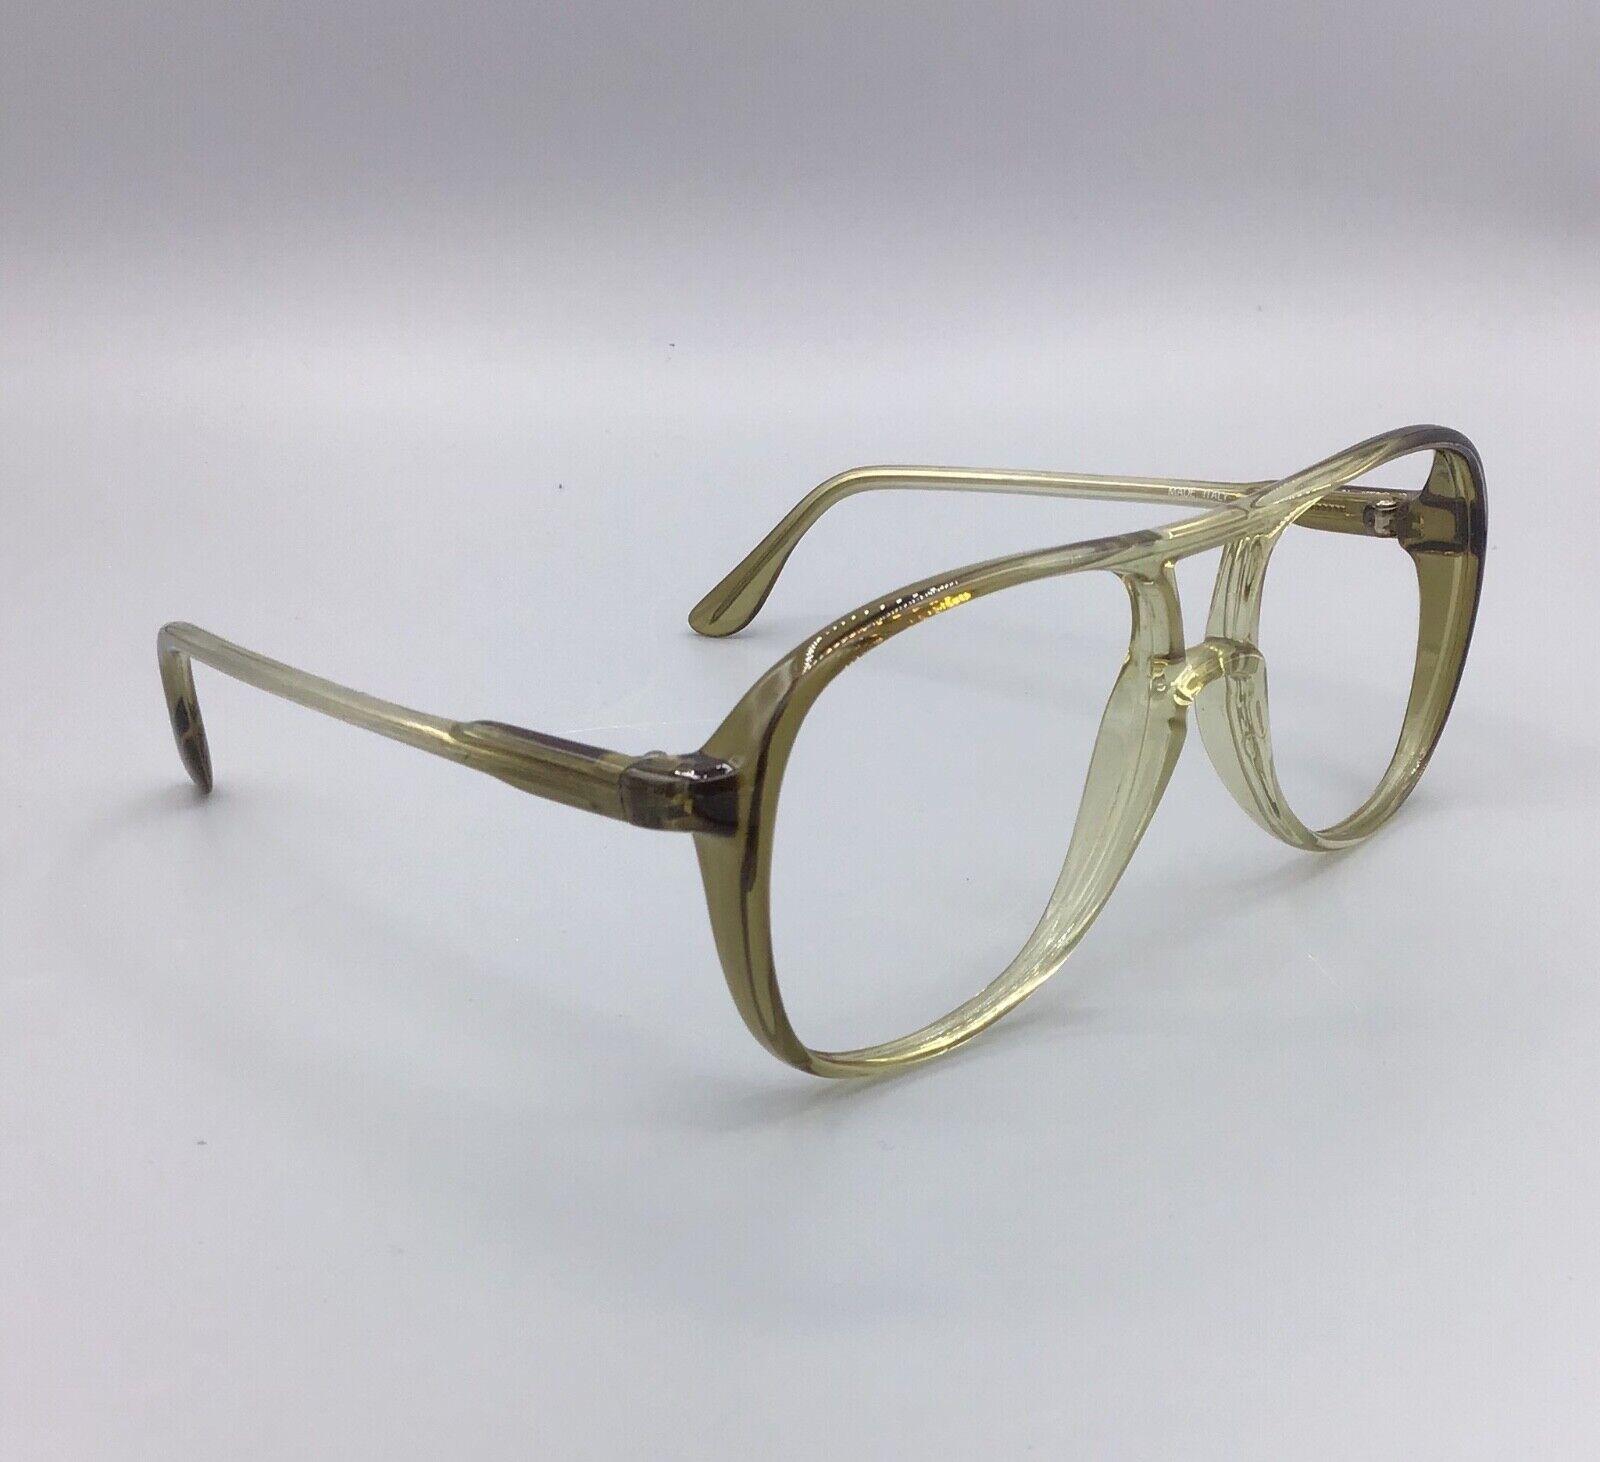 Metalflex occhiale vintage Eyewear frame brillen lunettes Made Italy model M-3